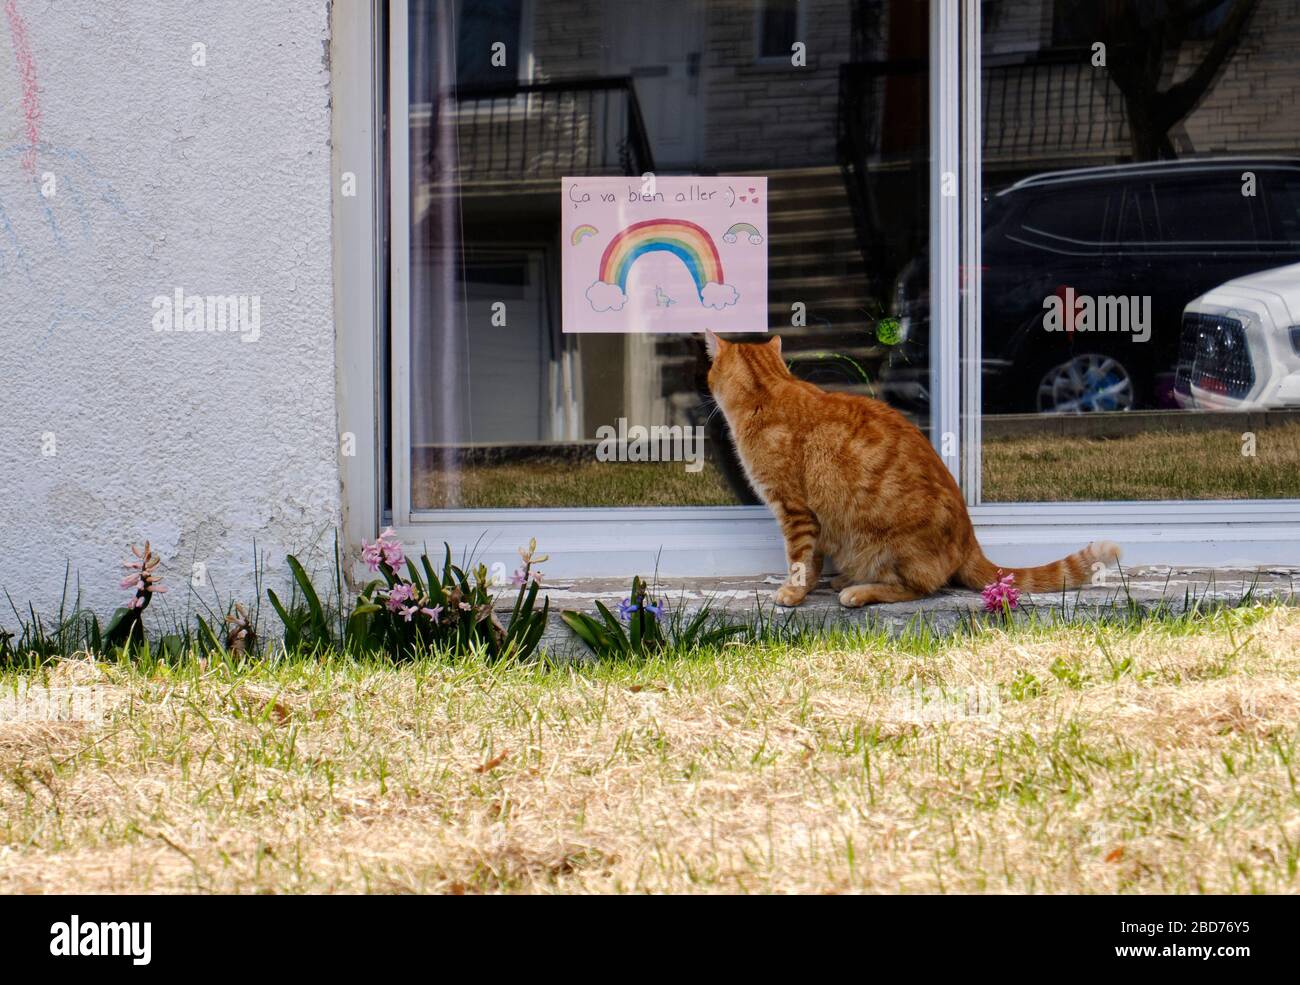 CAT betrachtet Hausfenster mit Regenbogenzeichnungen und Slogan "Ca va bien aller" als Botschaft der Hoffnung Teil der Bewegung während CoVID19 Stockfoto